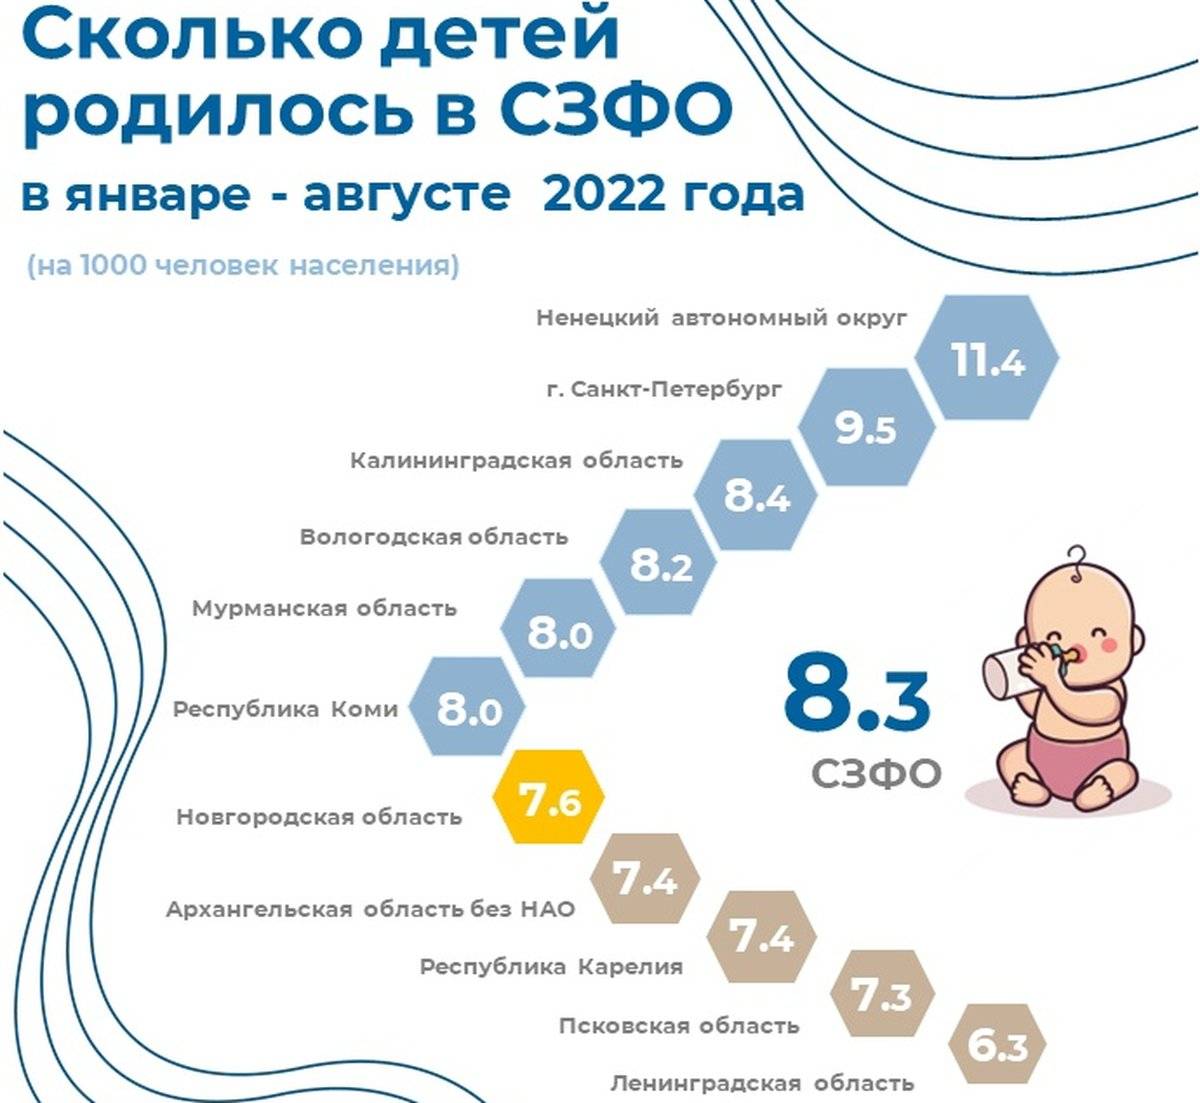 Новгородская область находится на седьмом месте в СЗФО по числу новорожденных на 1000 человек населения.